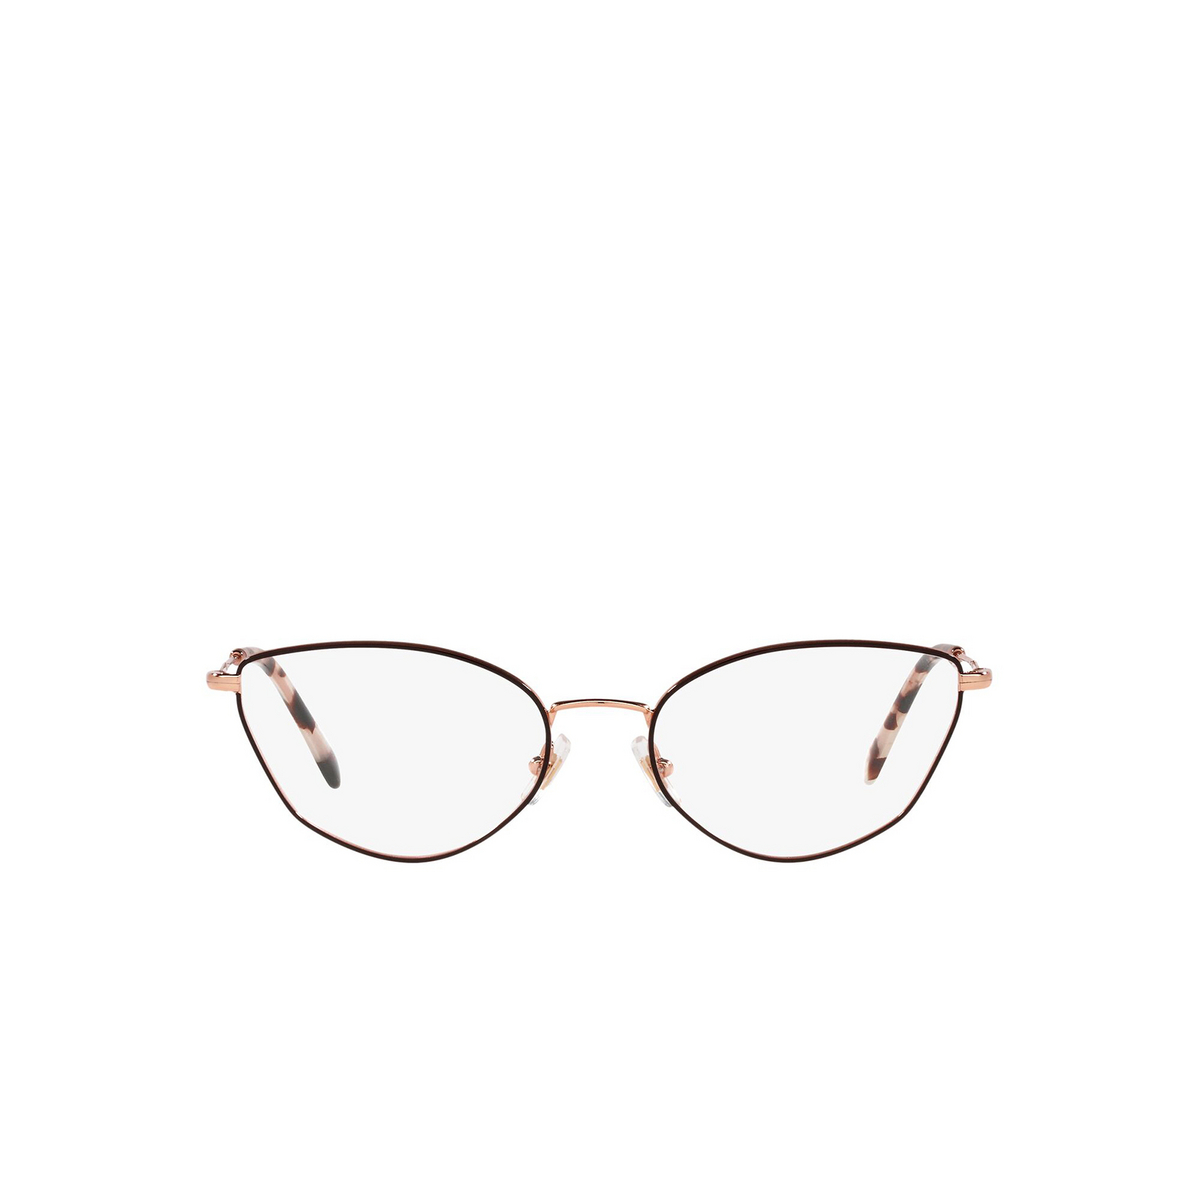 Miu Miu® Cat-eye Eyeglasses: MU 51SV color Brown 3311O1 - front view.